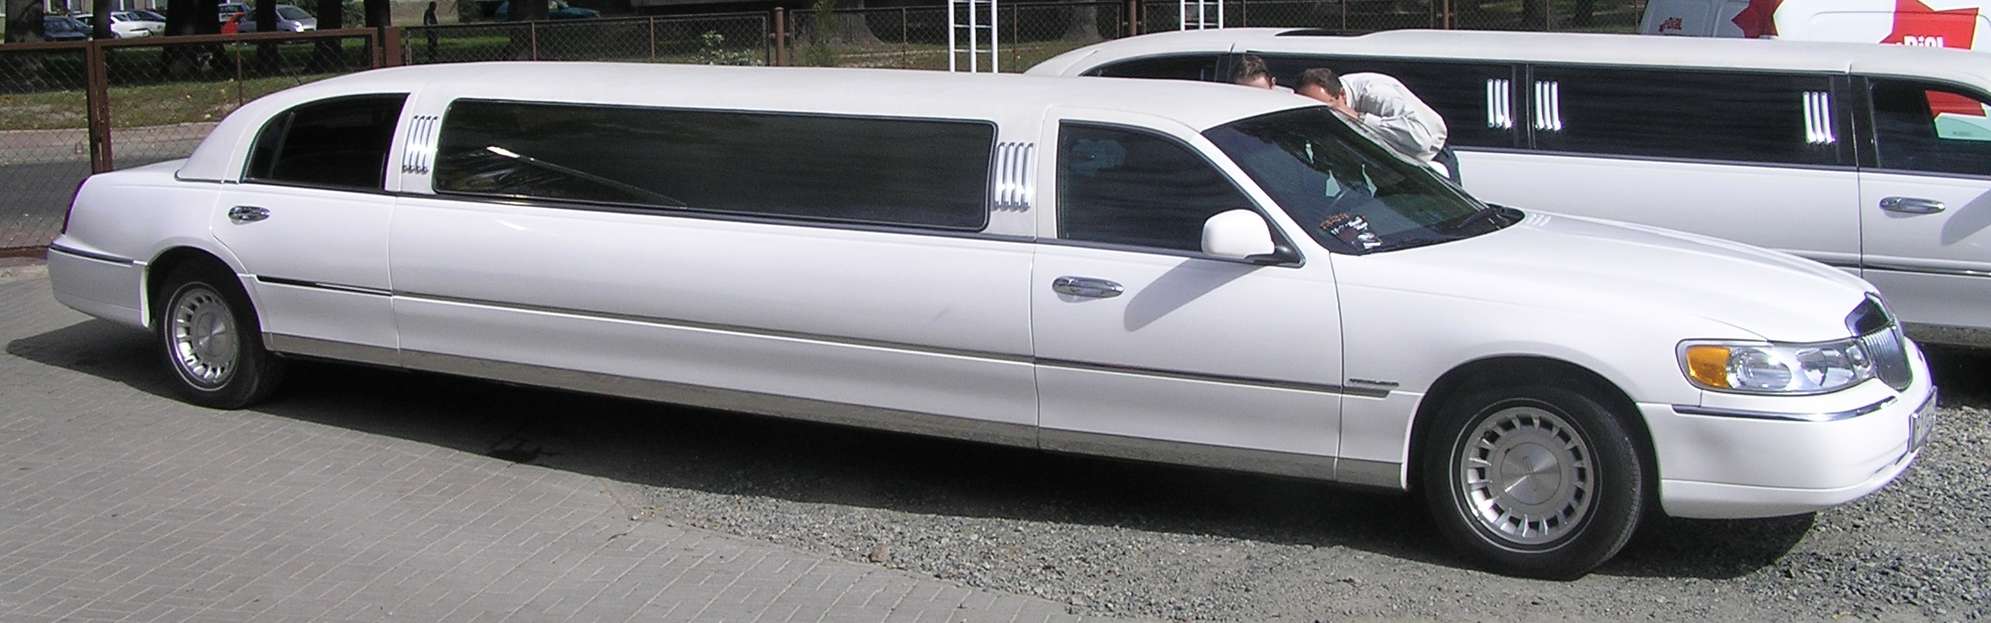 Lincoln Limousine #9113483